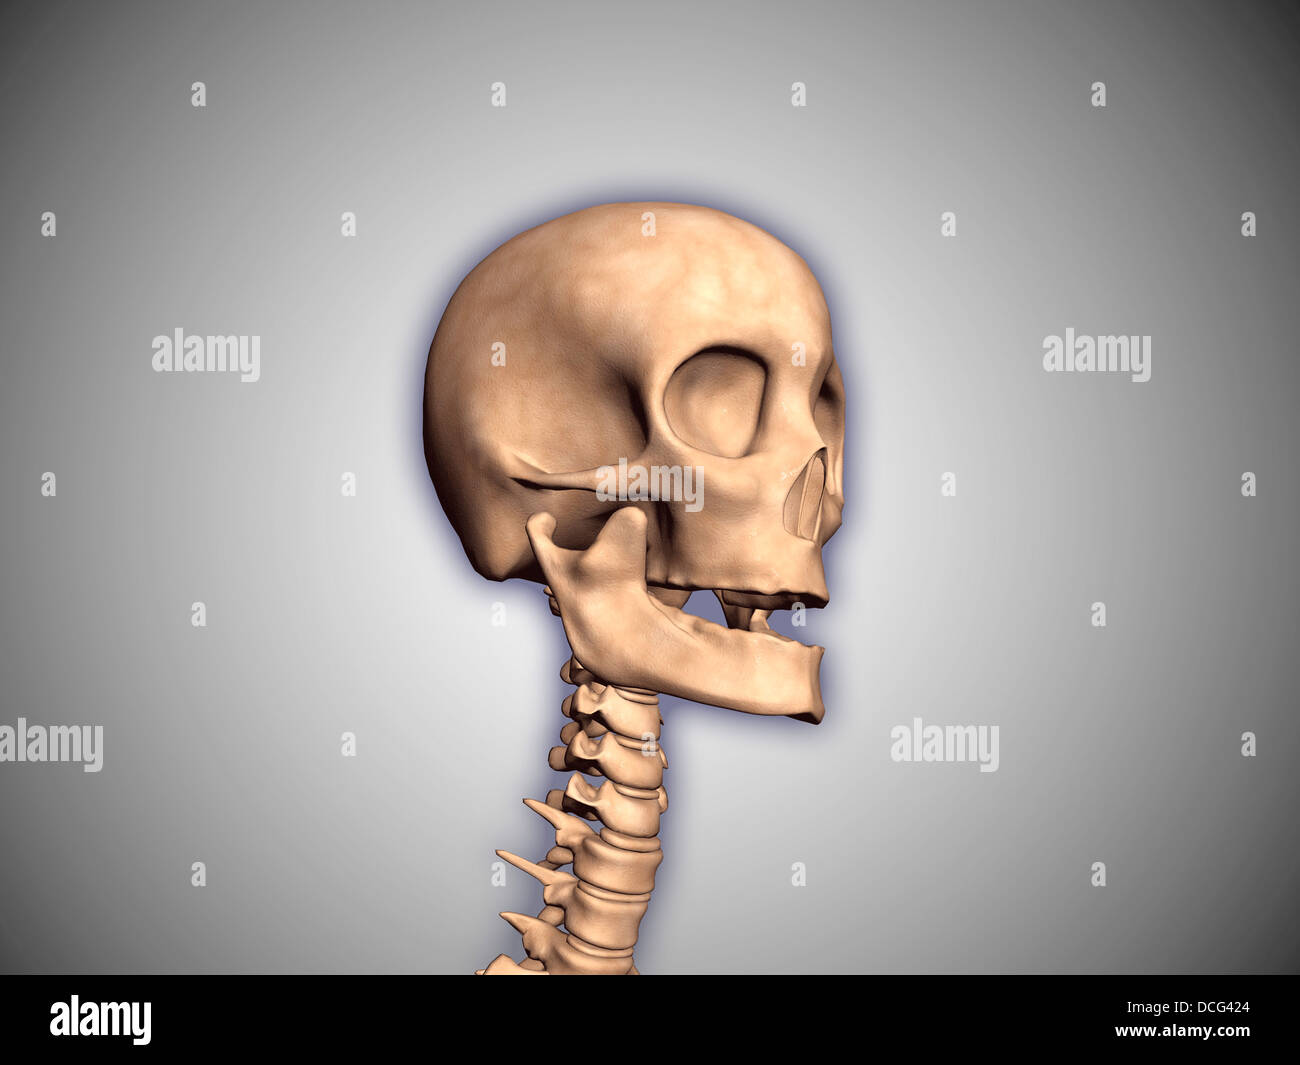 Immagine concettuale del cranio umano e del midollo spinale. Foto Stock